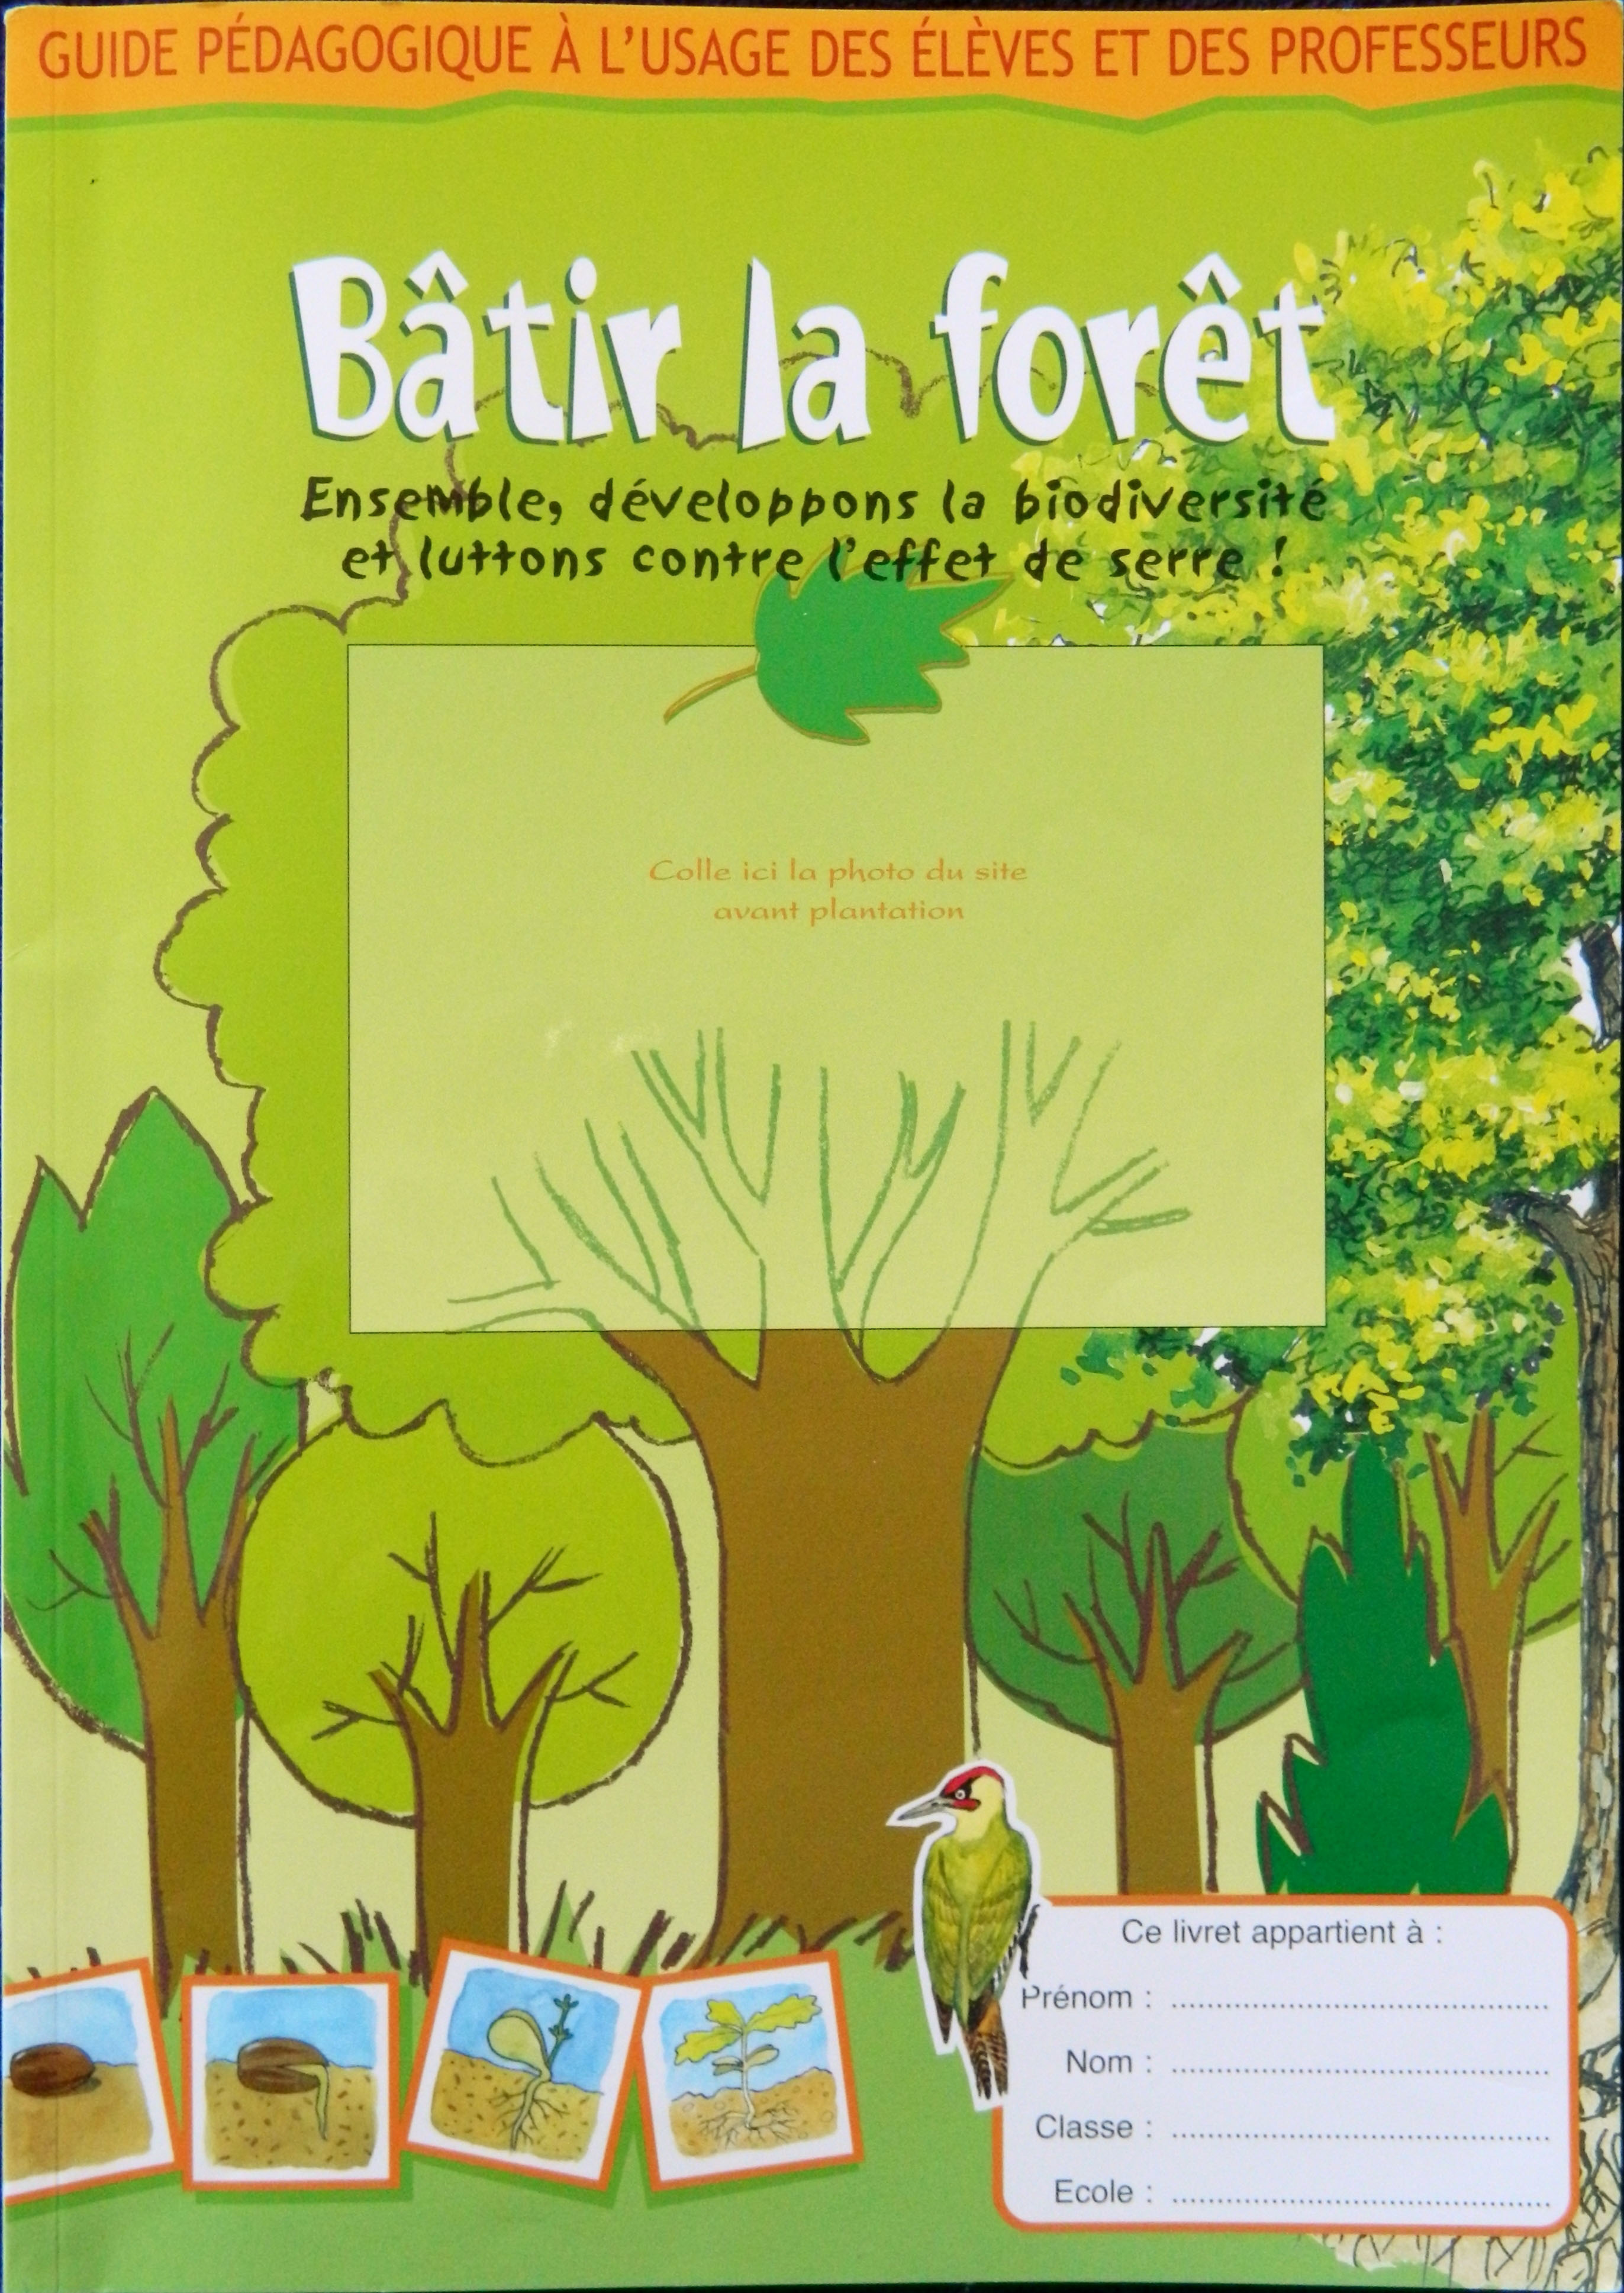 Le guide pédagogique "Bâtir la forêt; Ensemble développons la biodiversité et luttons contre l'effet de serre"